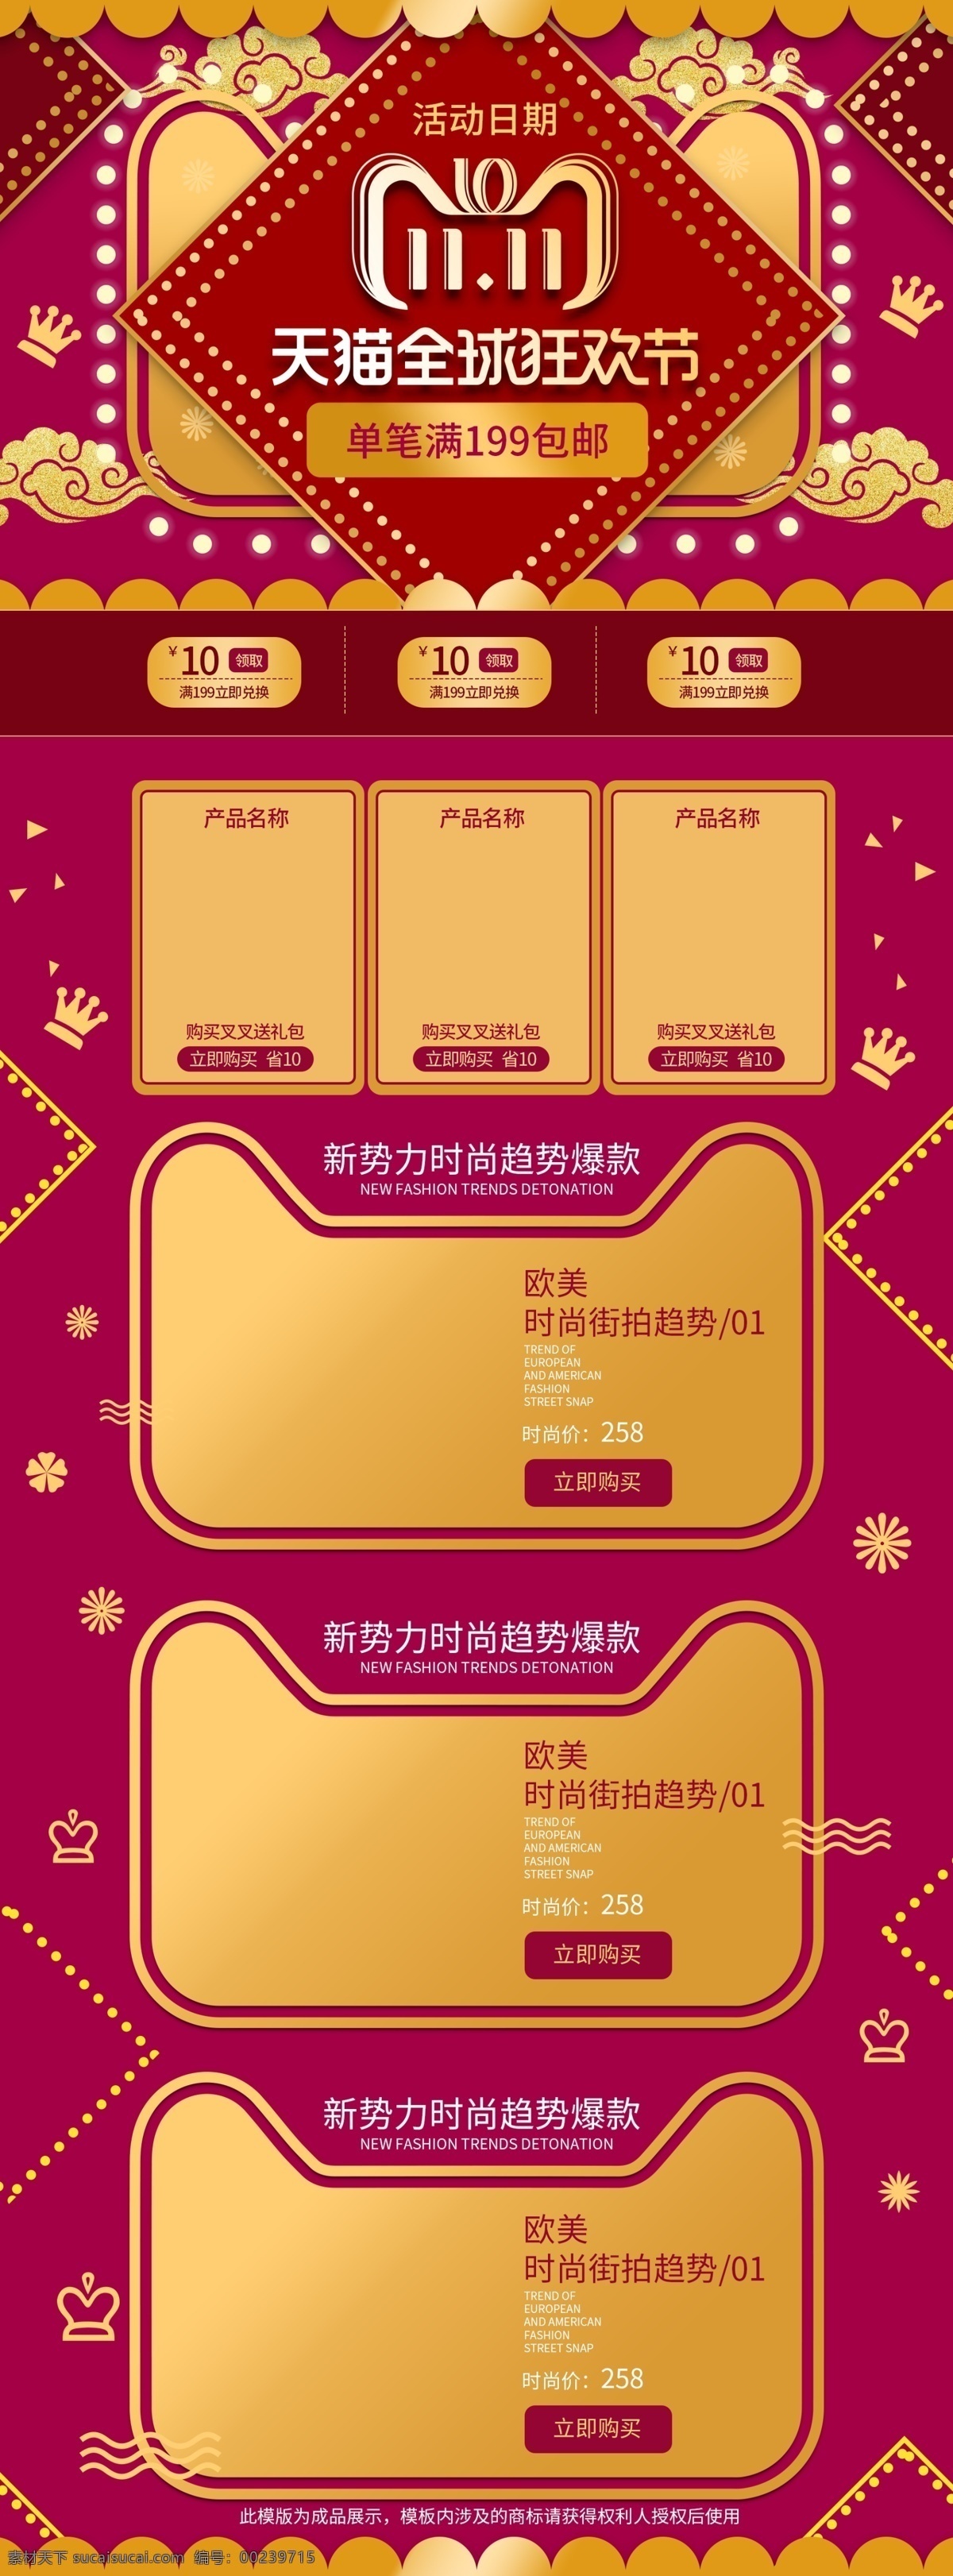 中国 红 天猫 双十 促销 首页 时尚 节日 中国红 传统 活动